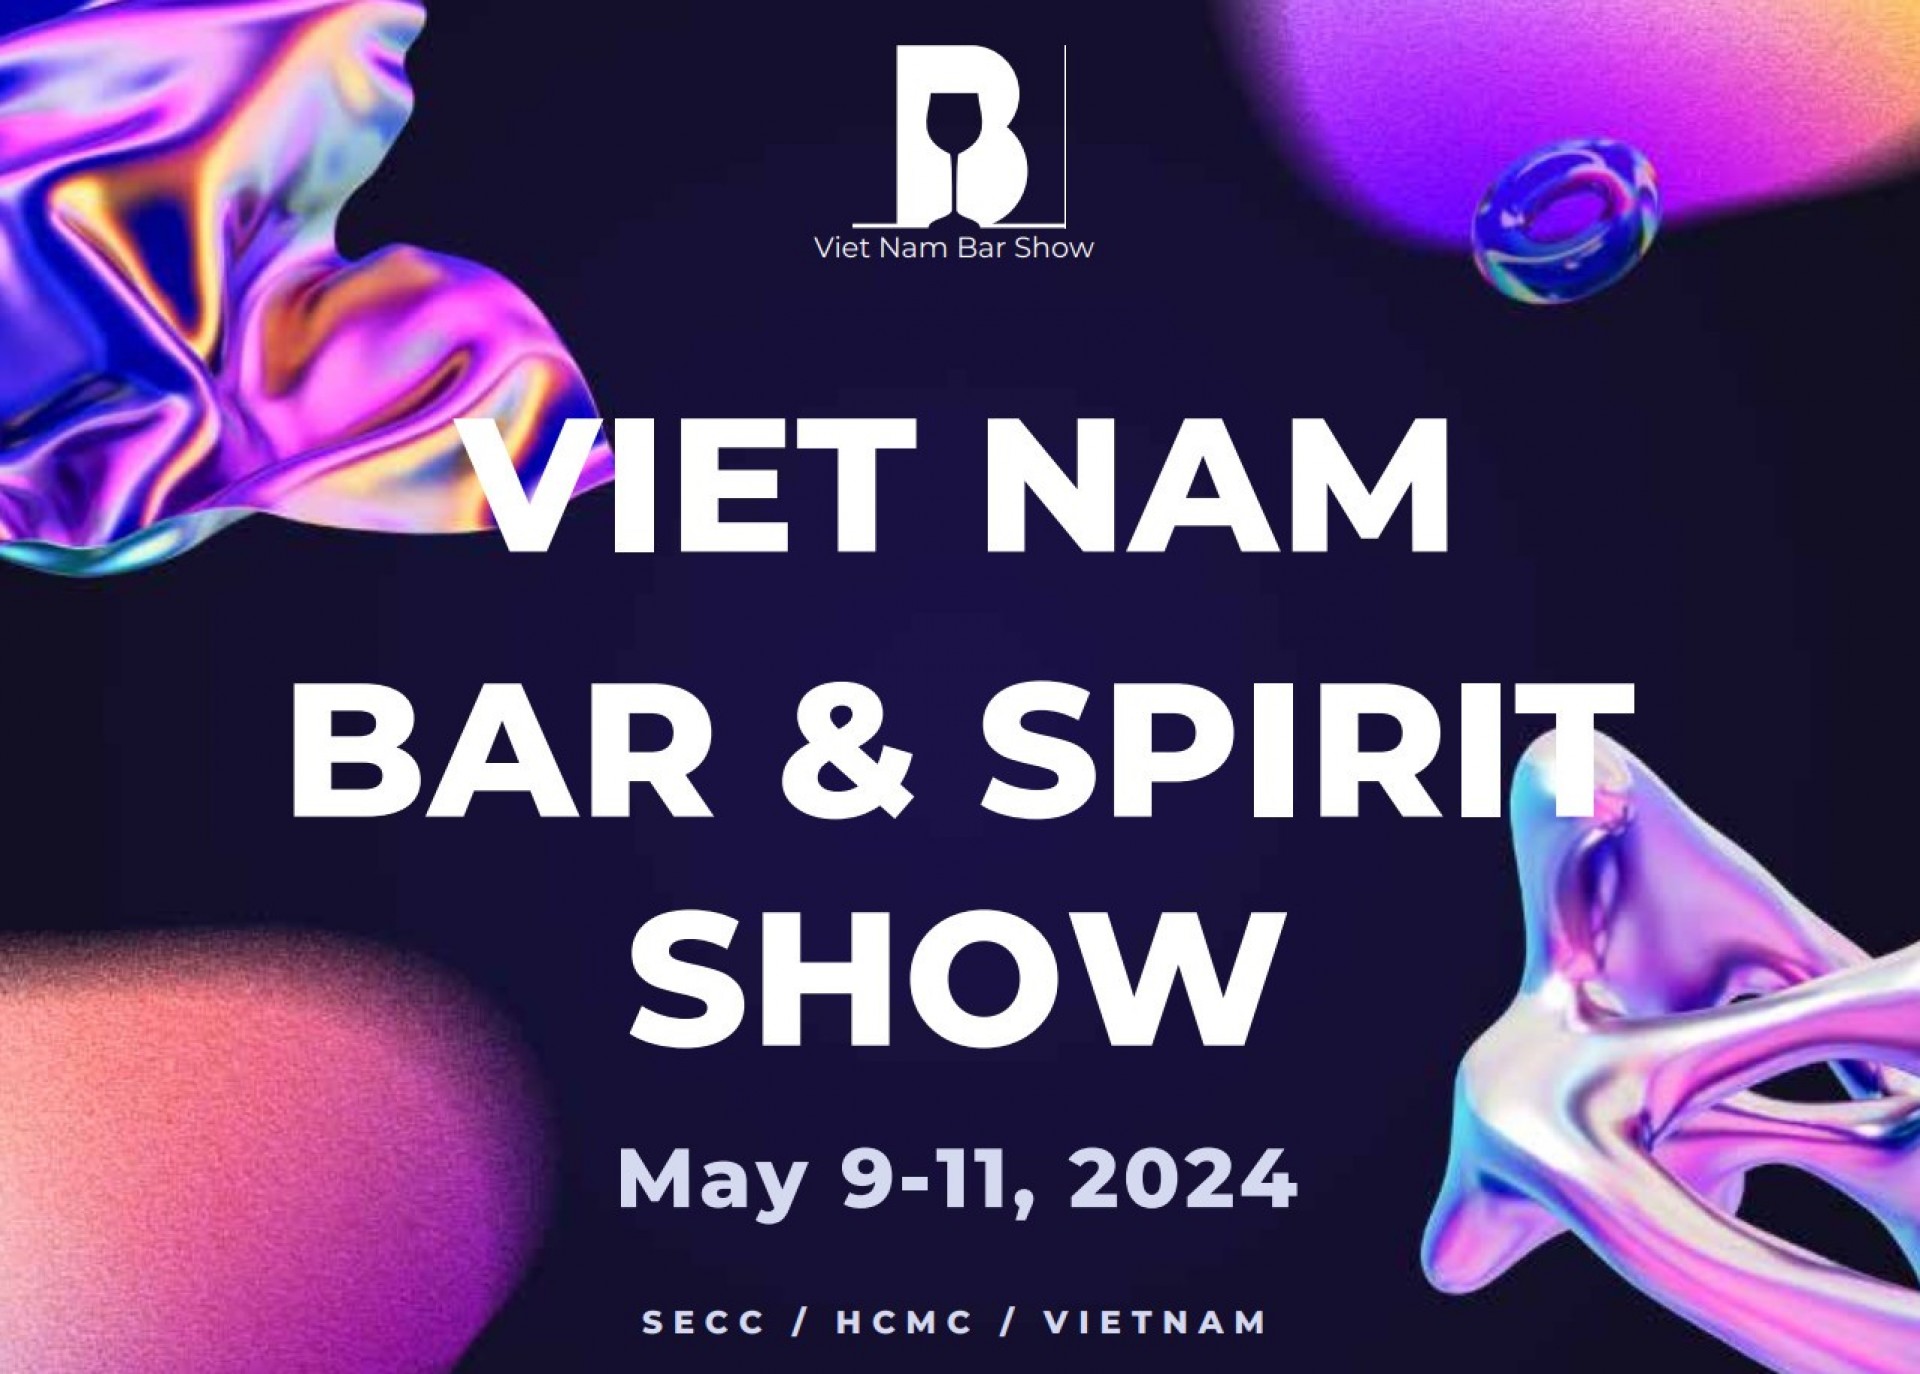 vietnam-bar-spirit-show-2024.jpg